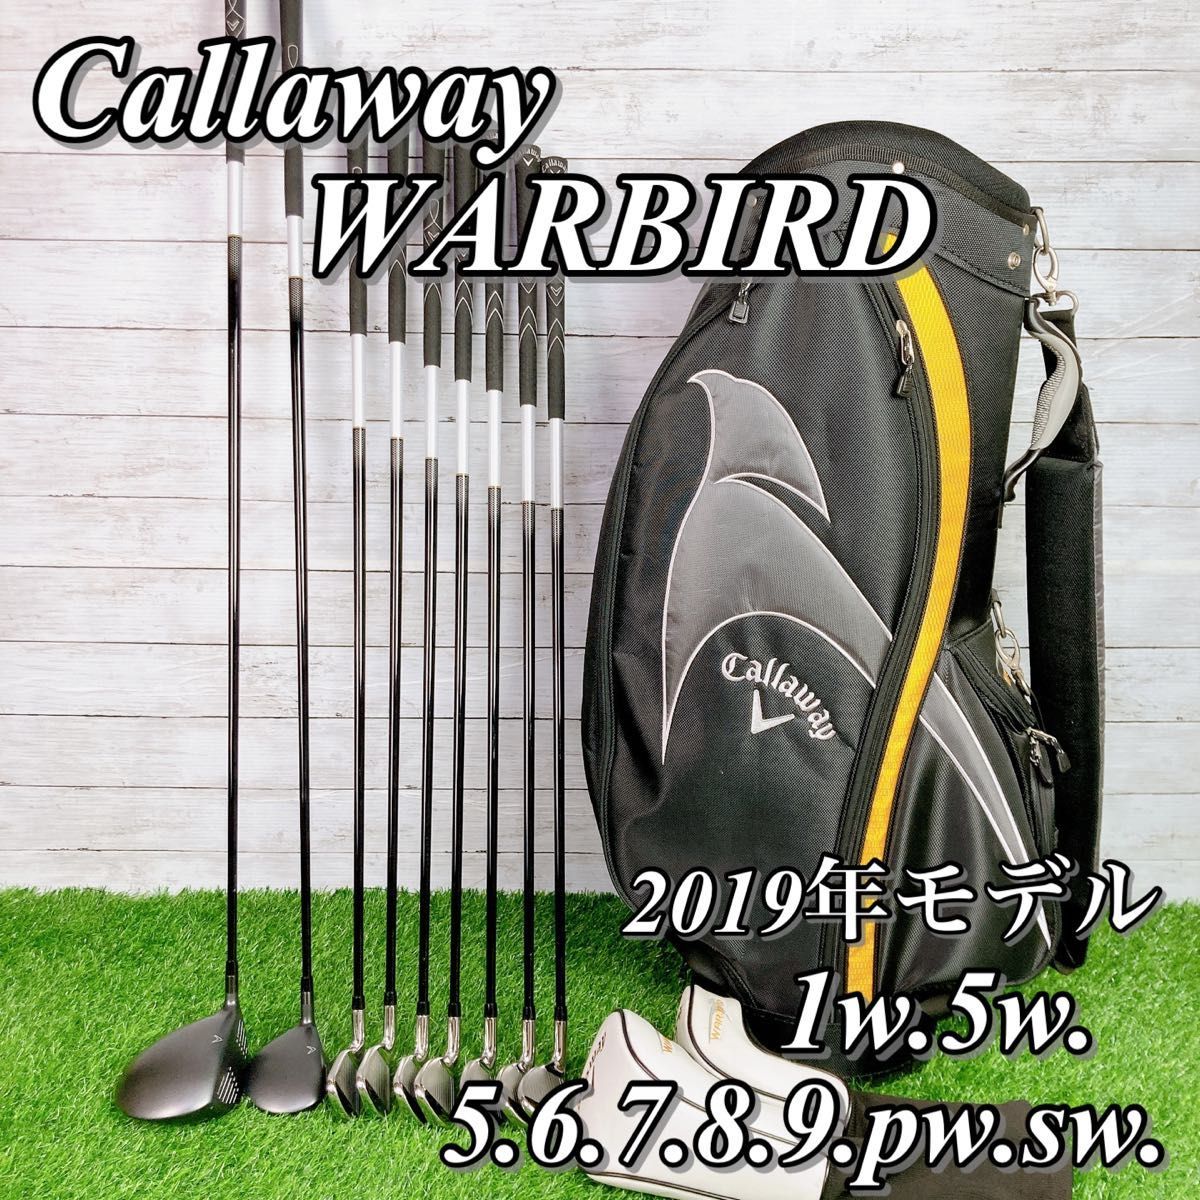 大人気】【早い者勝ち】callaway WARBIRD ゴルフクラブセット キャロウェイ ウォーバード 2019年 現行モデル キャディバッグ付 